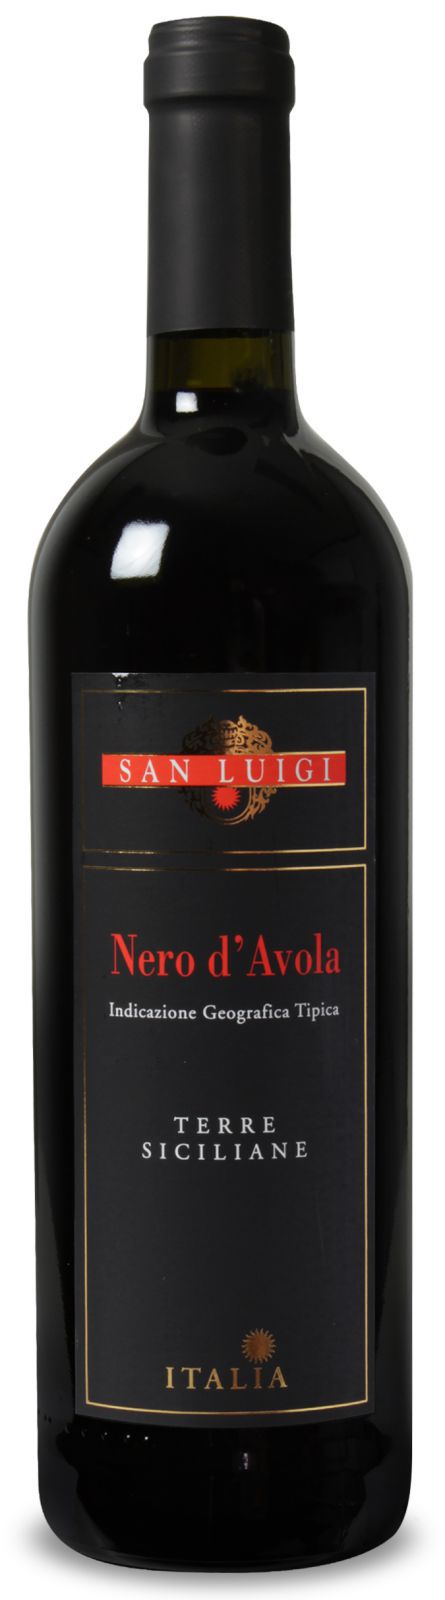 San Luigi - Nero d'Avola - Siciliana IGT